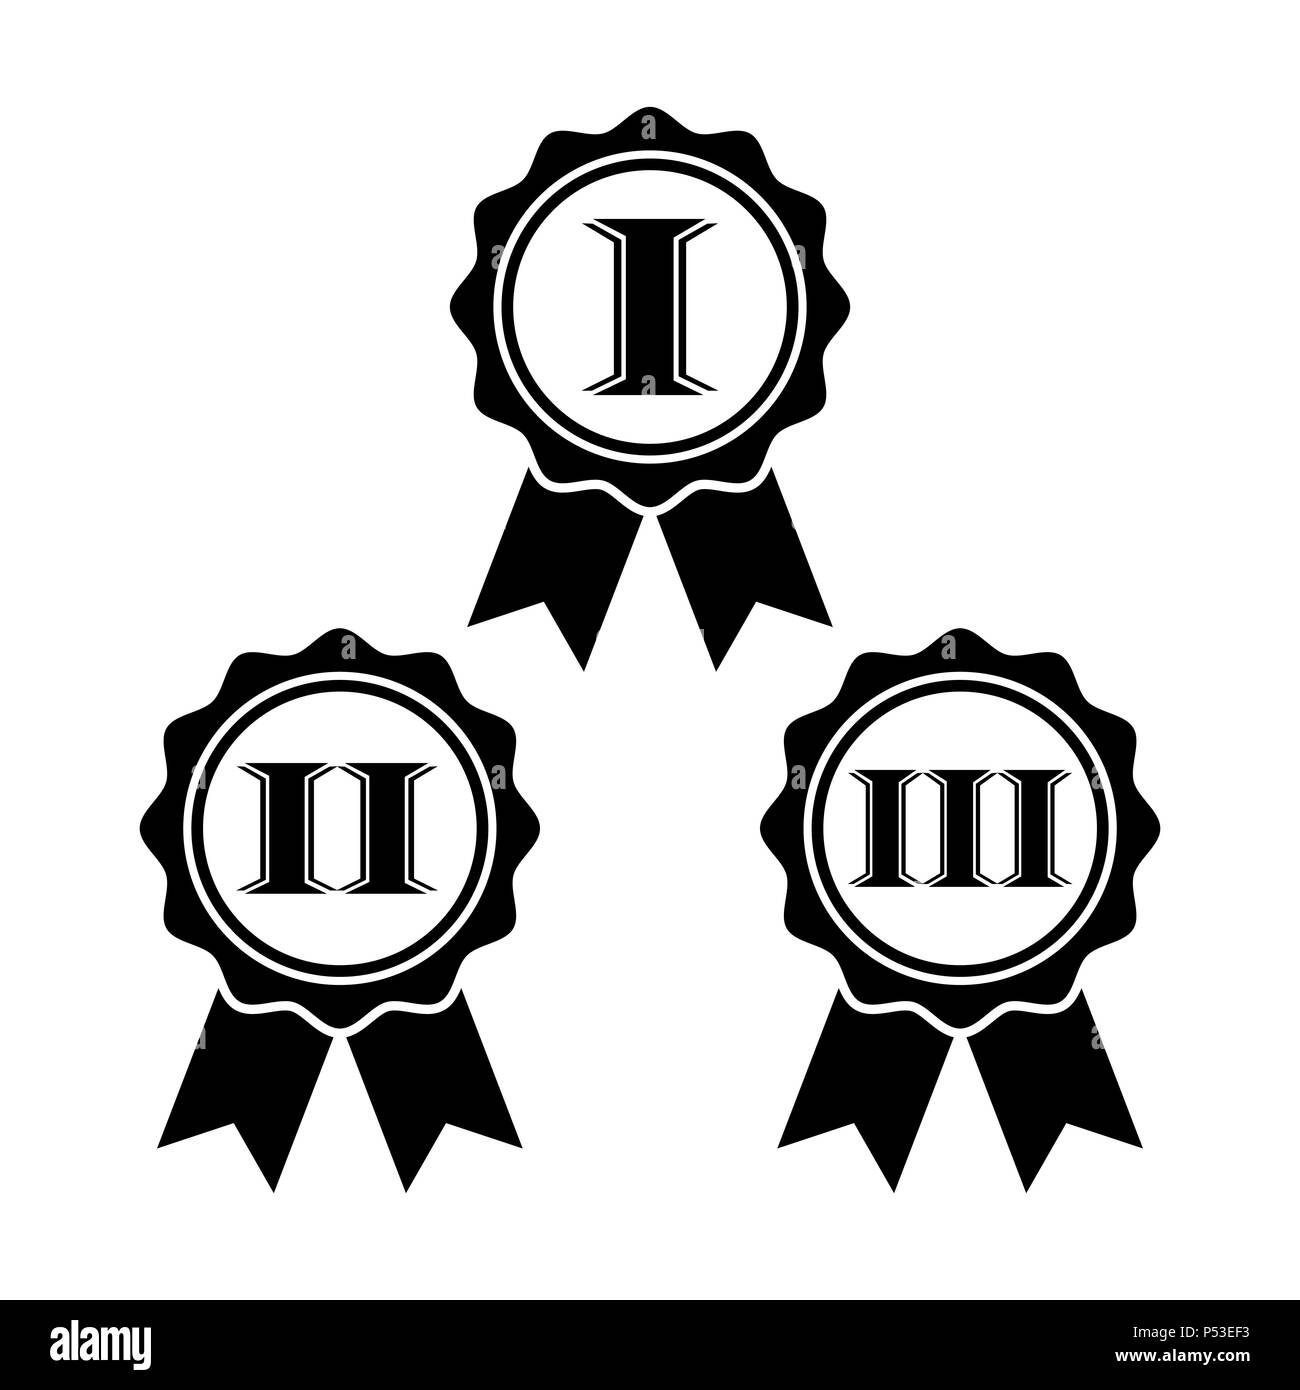 Medaglia premio icon set in stile appartamento. Simbolo di rosette isolati su sfondo bianco. Semplice primo, secondo e terzo premio segno. Icona astratta in nero. Illustrazione Vettoriale